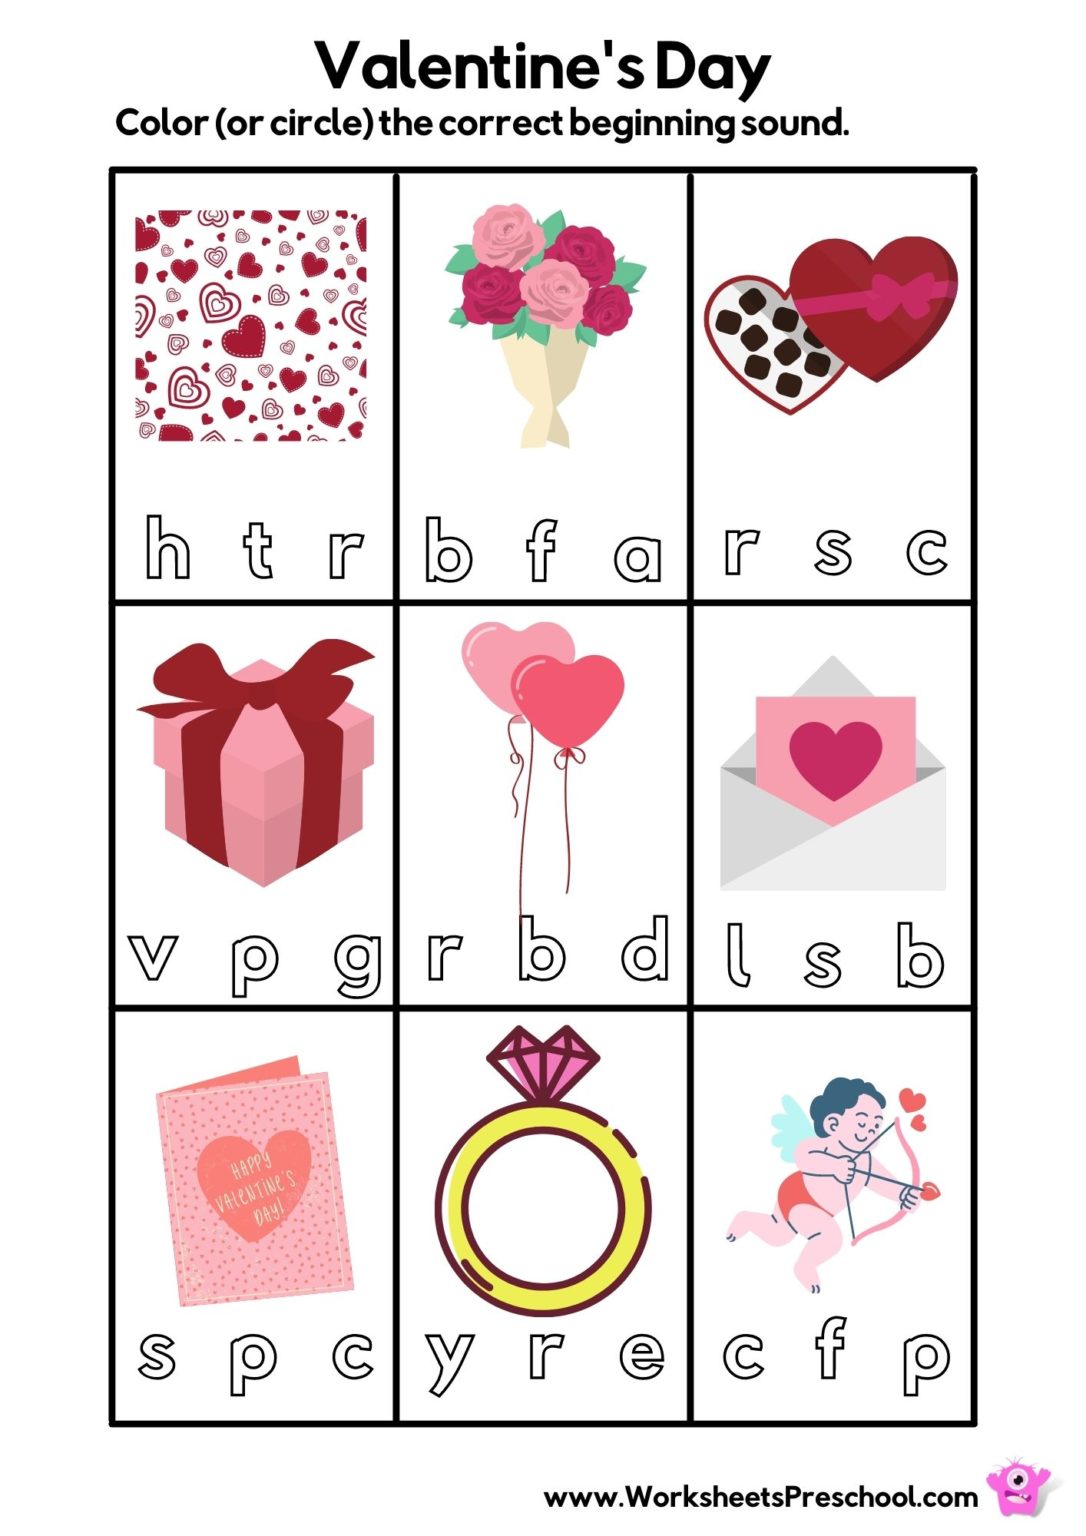 Free Printable Valentines Worksheets For Preschoolers